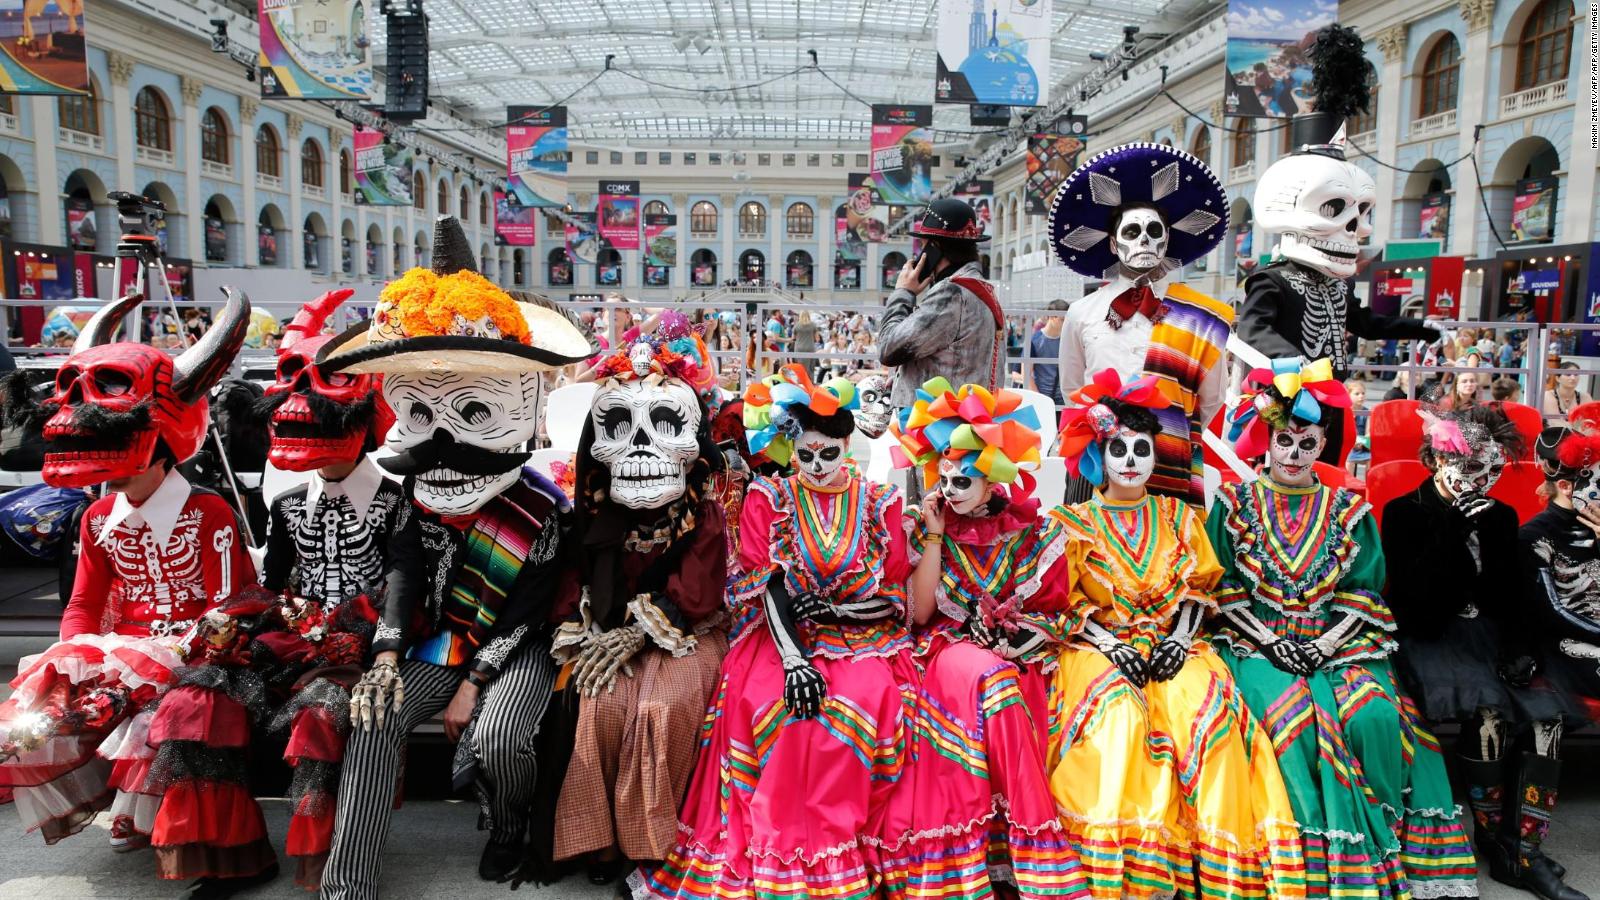 Desfile de Día de Muertos: catrinas y calaveras para celebrar la tradición  | Video | CNN